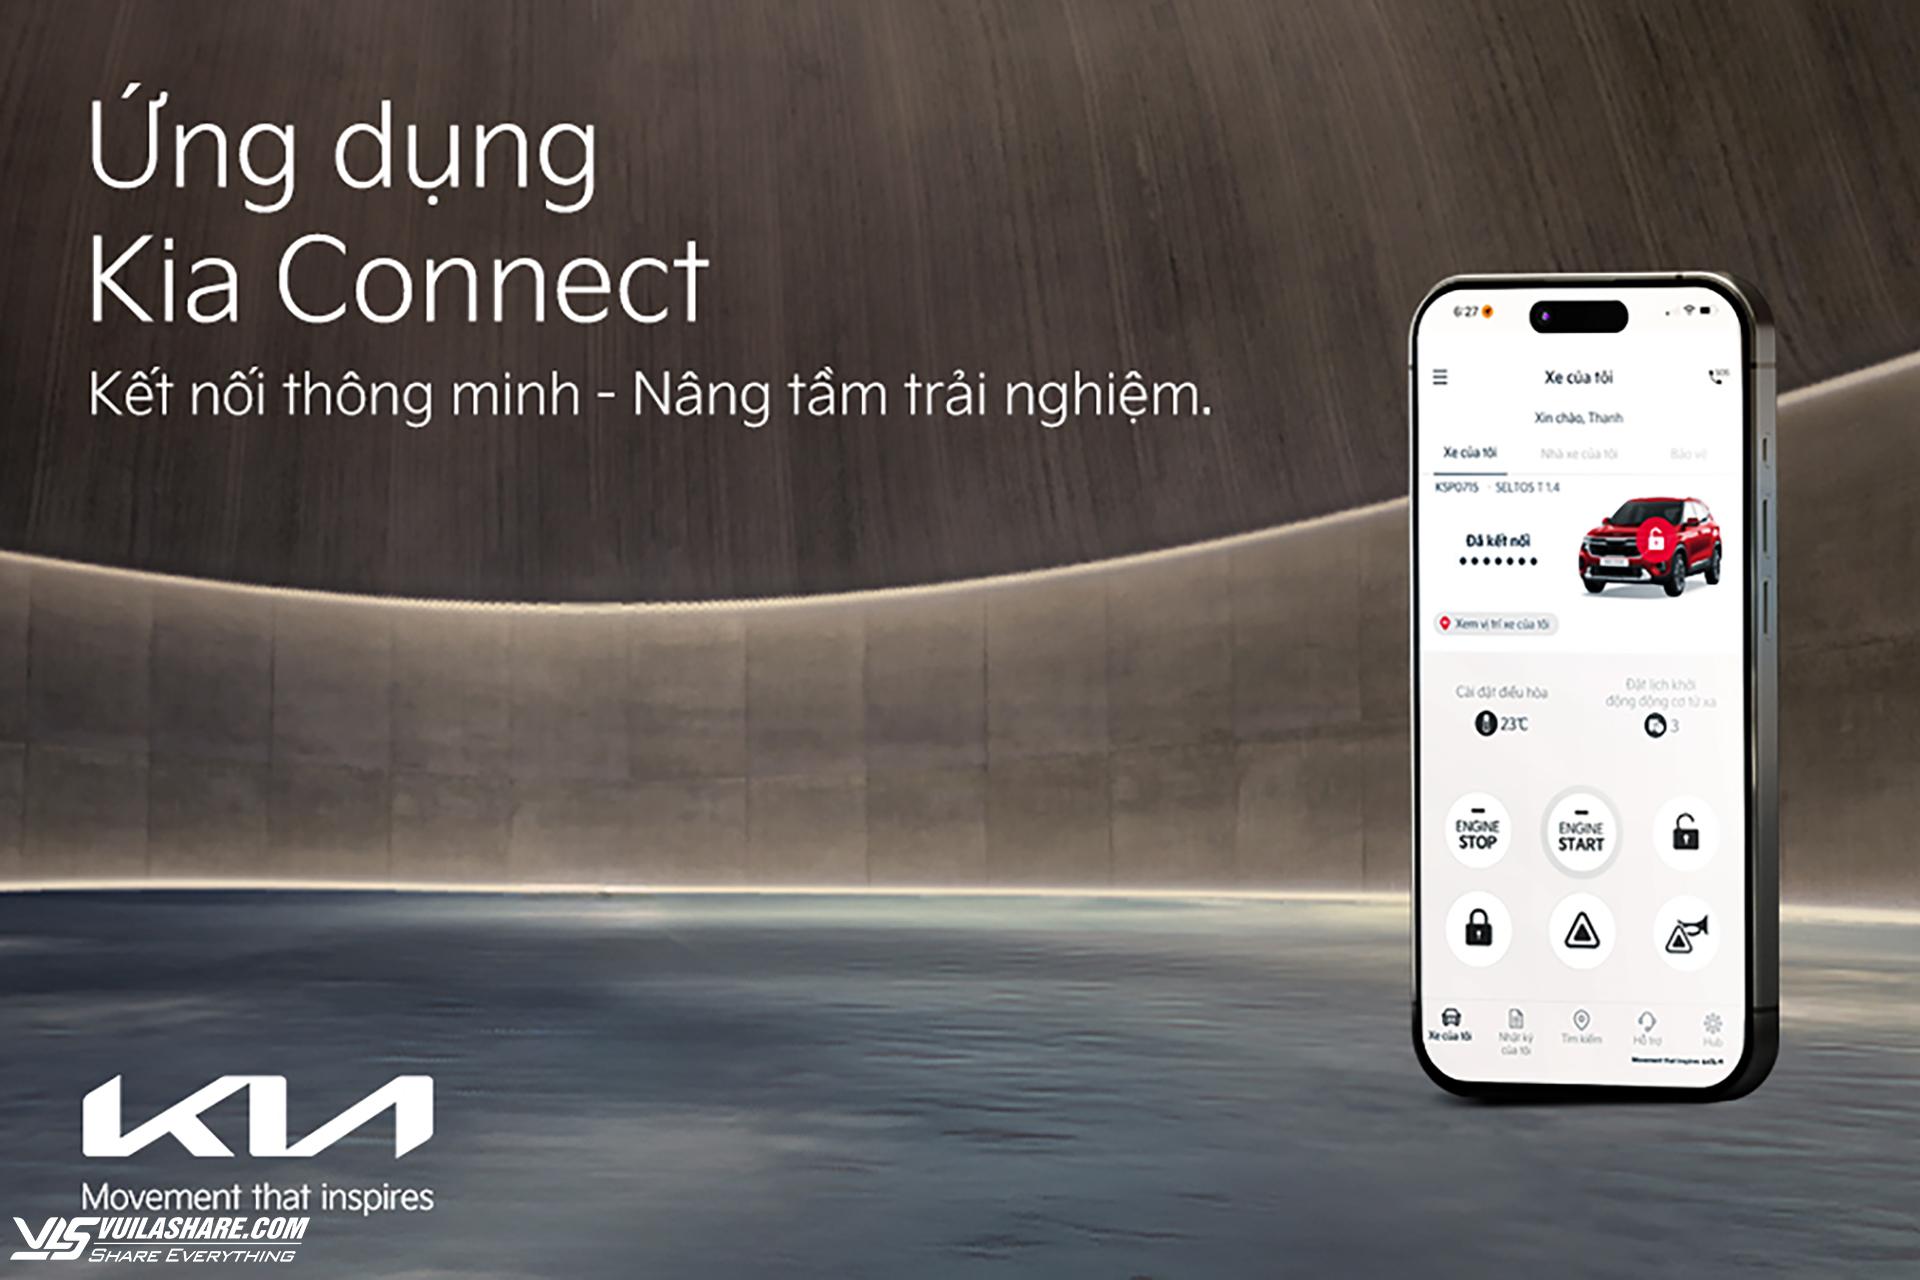 Tính năng Kia Connect độc quyền được ví như một "trợ lý thông minh", giúp người người dùng dễ dàng kết nối với "xế cưng"